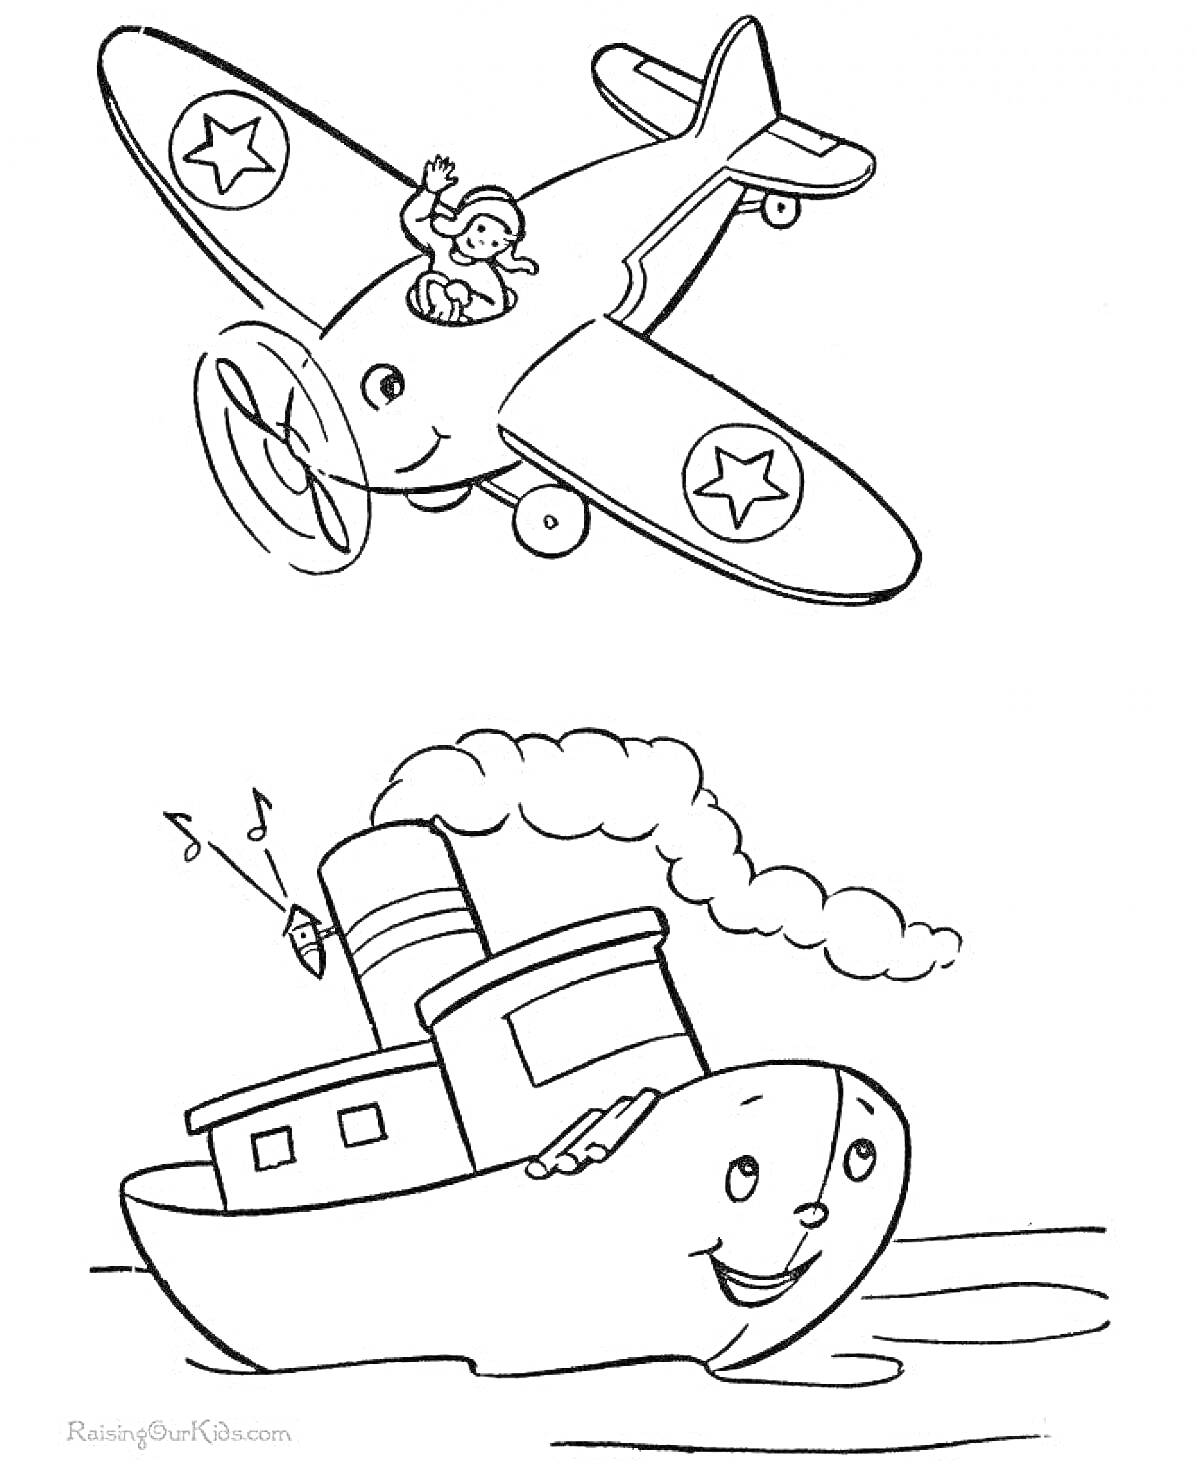 Раскраска Самолёт с пилотом и улыбающийся пароход с дымом